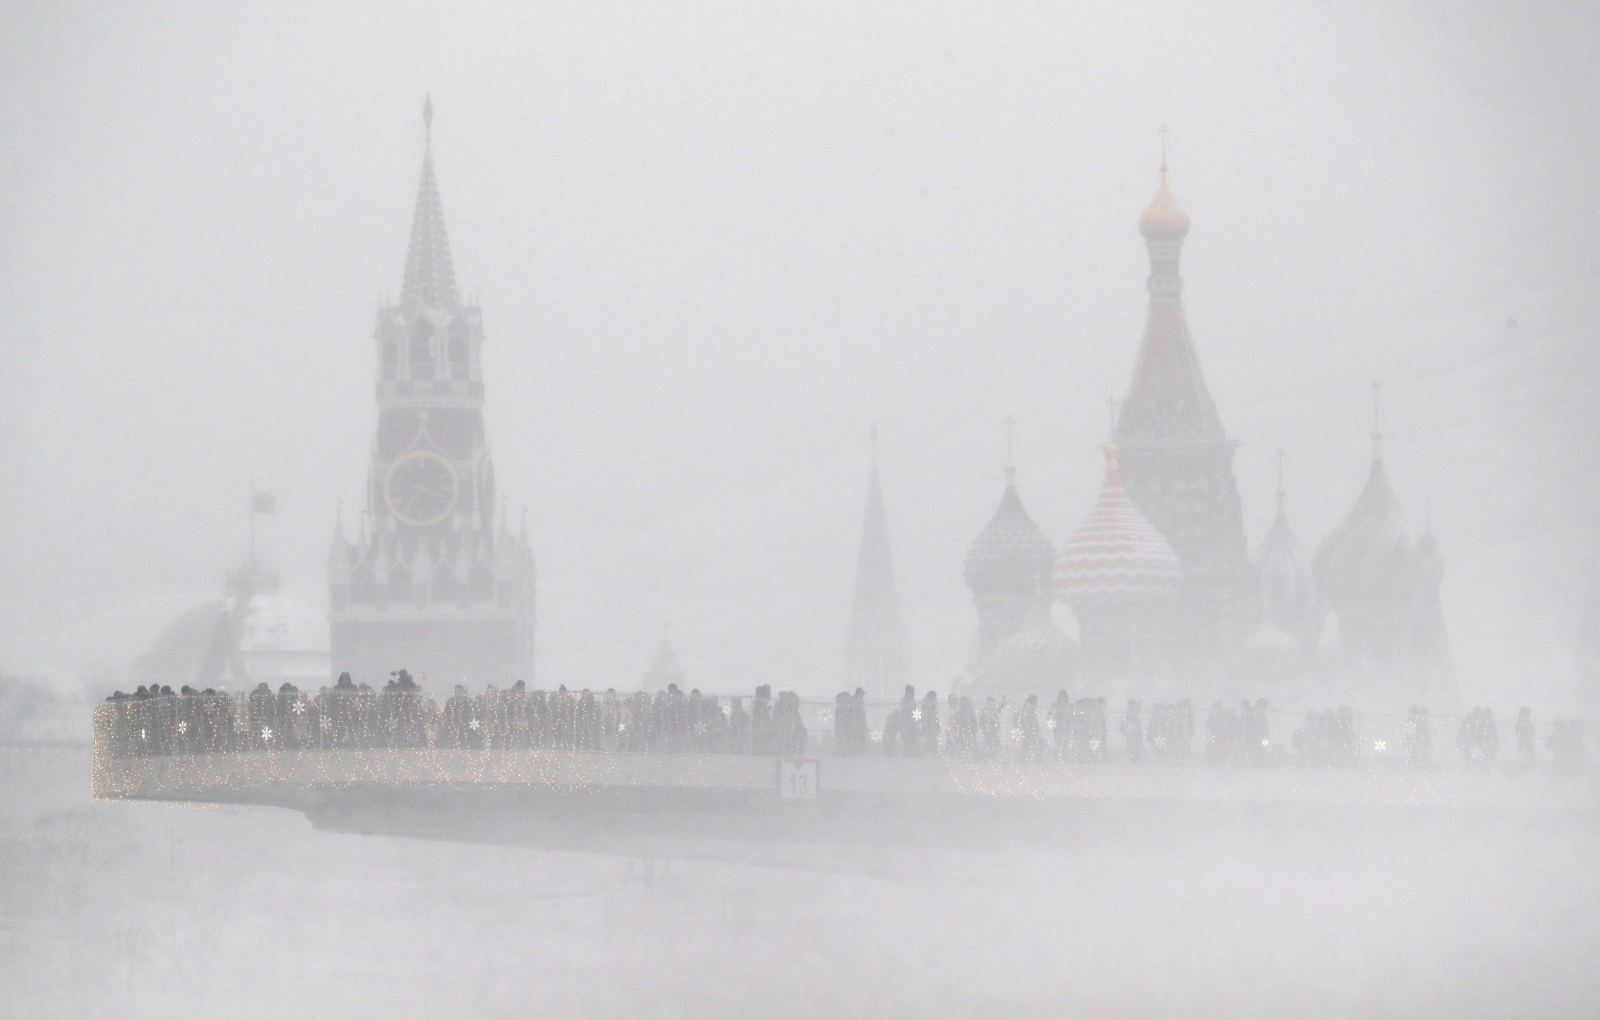 Zamieć śnieżna w Moskwie  EPA/MAXIM SHIPENKOV 